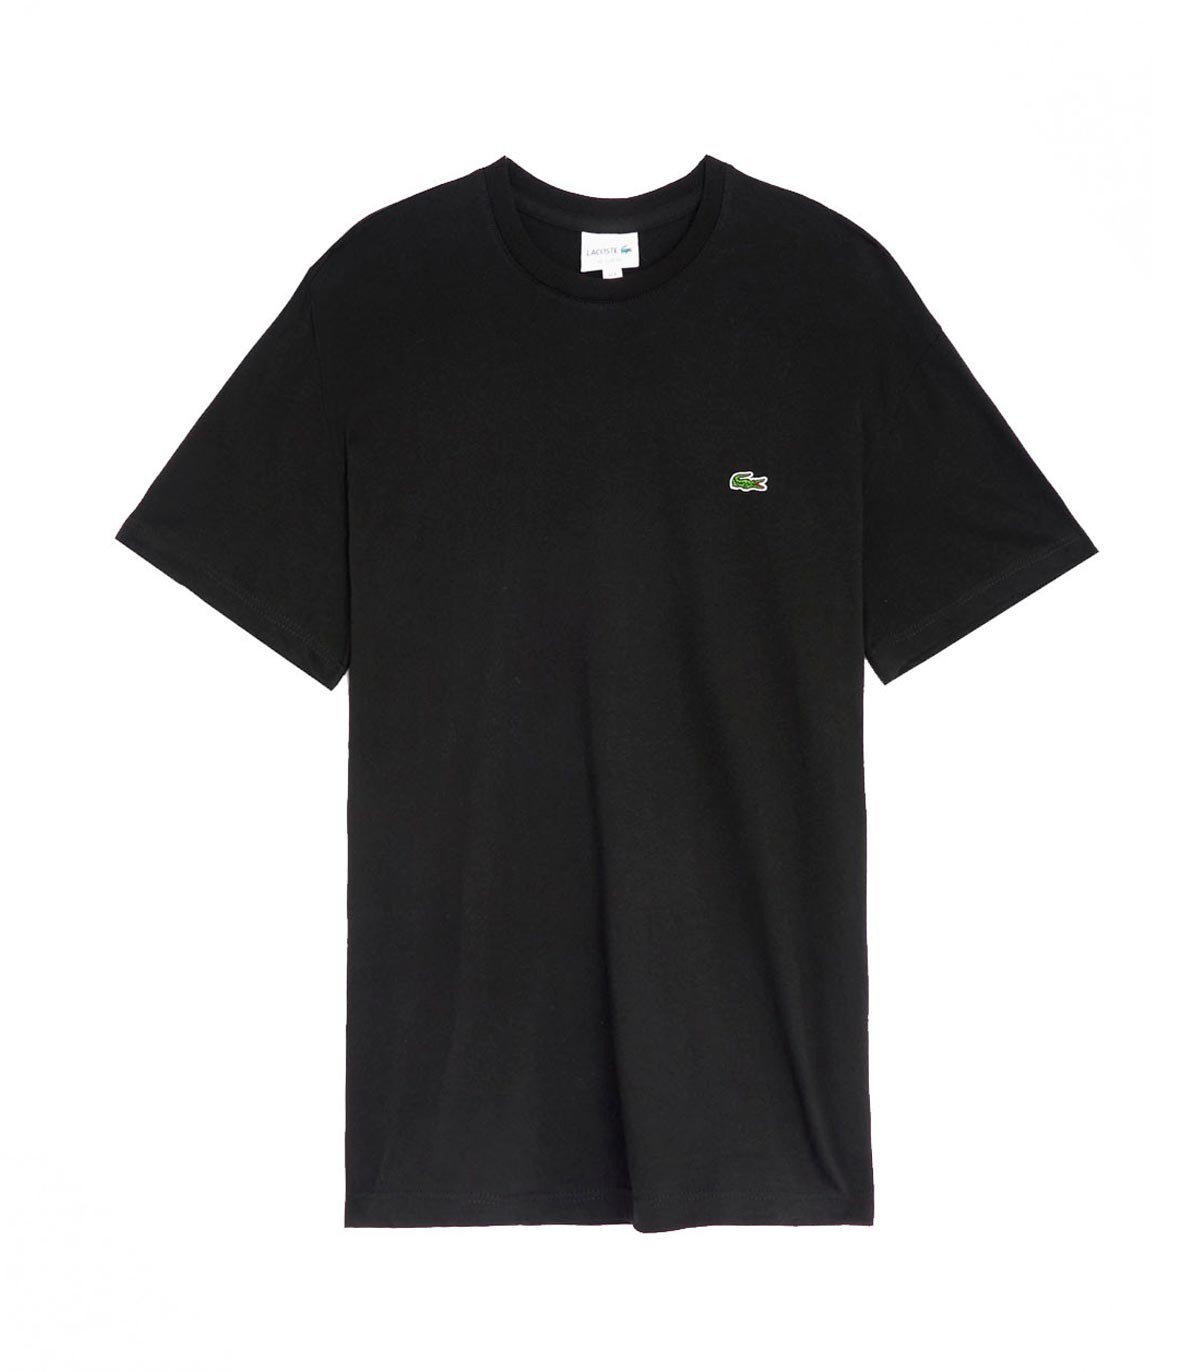 Lacoste - Camiseta Regular Fit - Negro